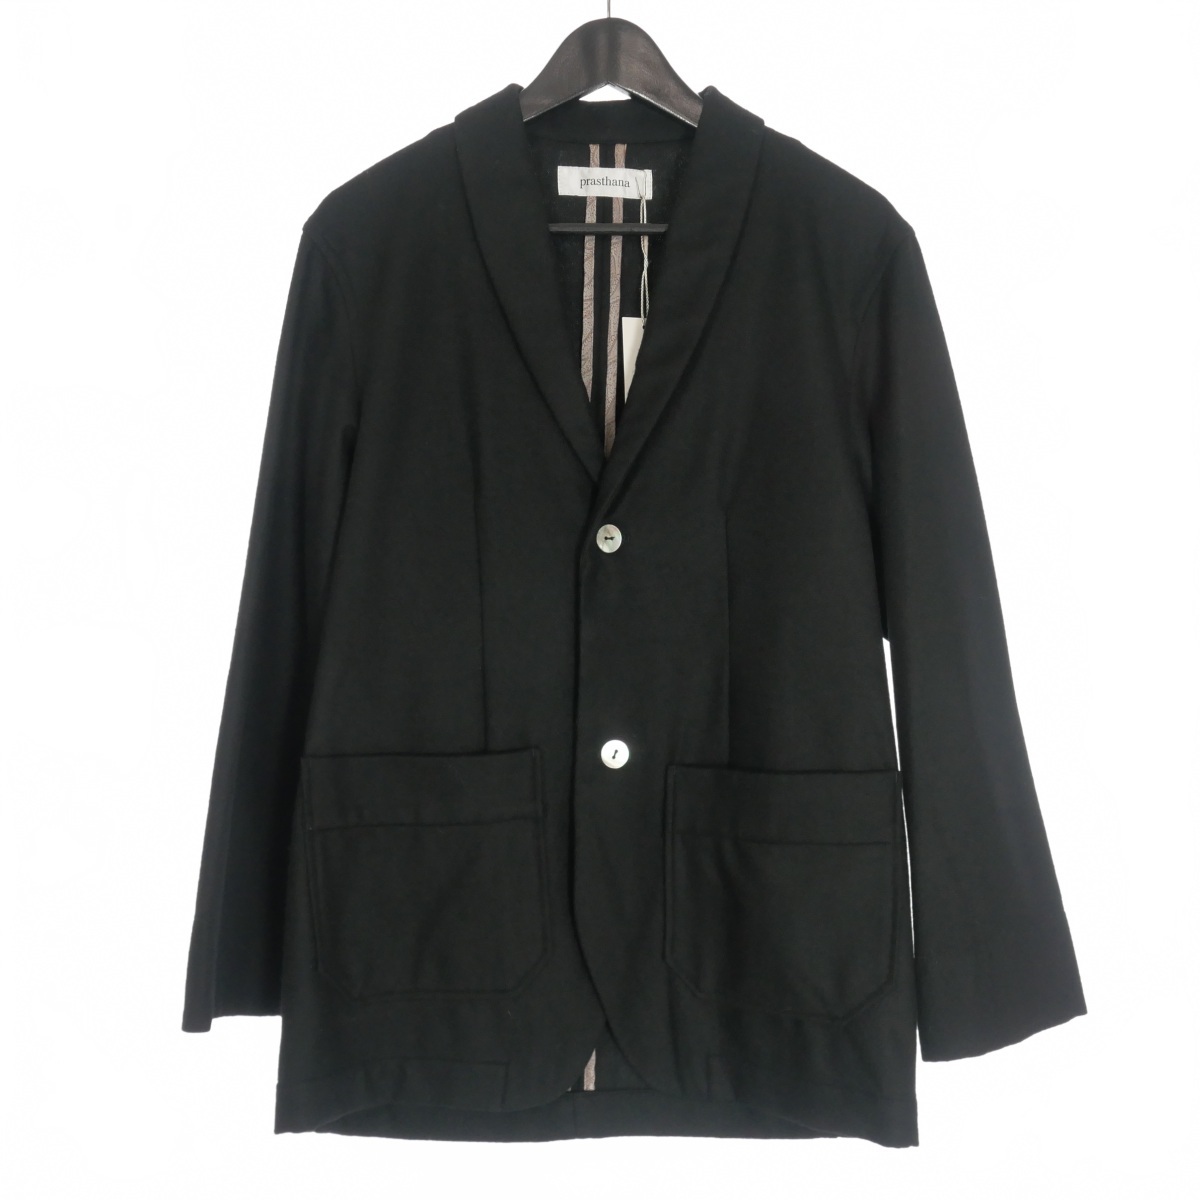 未使用品 プラスターナ Prasthana semidress jacket セミドレスジャケット ブレザー パッチポケット 1 黒 ブラック P-0304004 メンズ